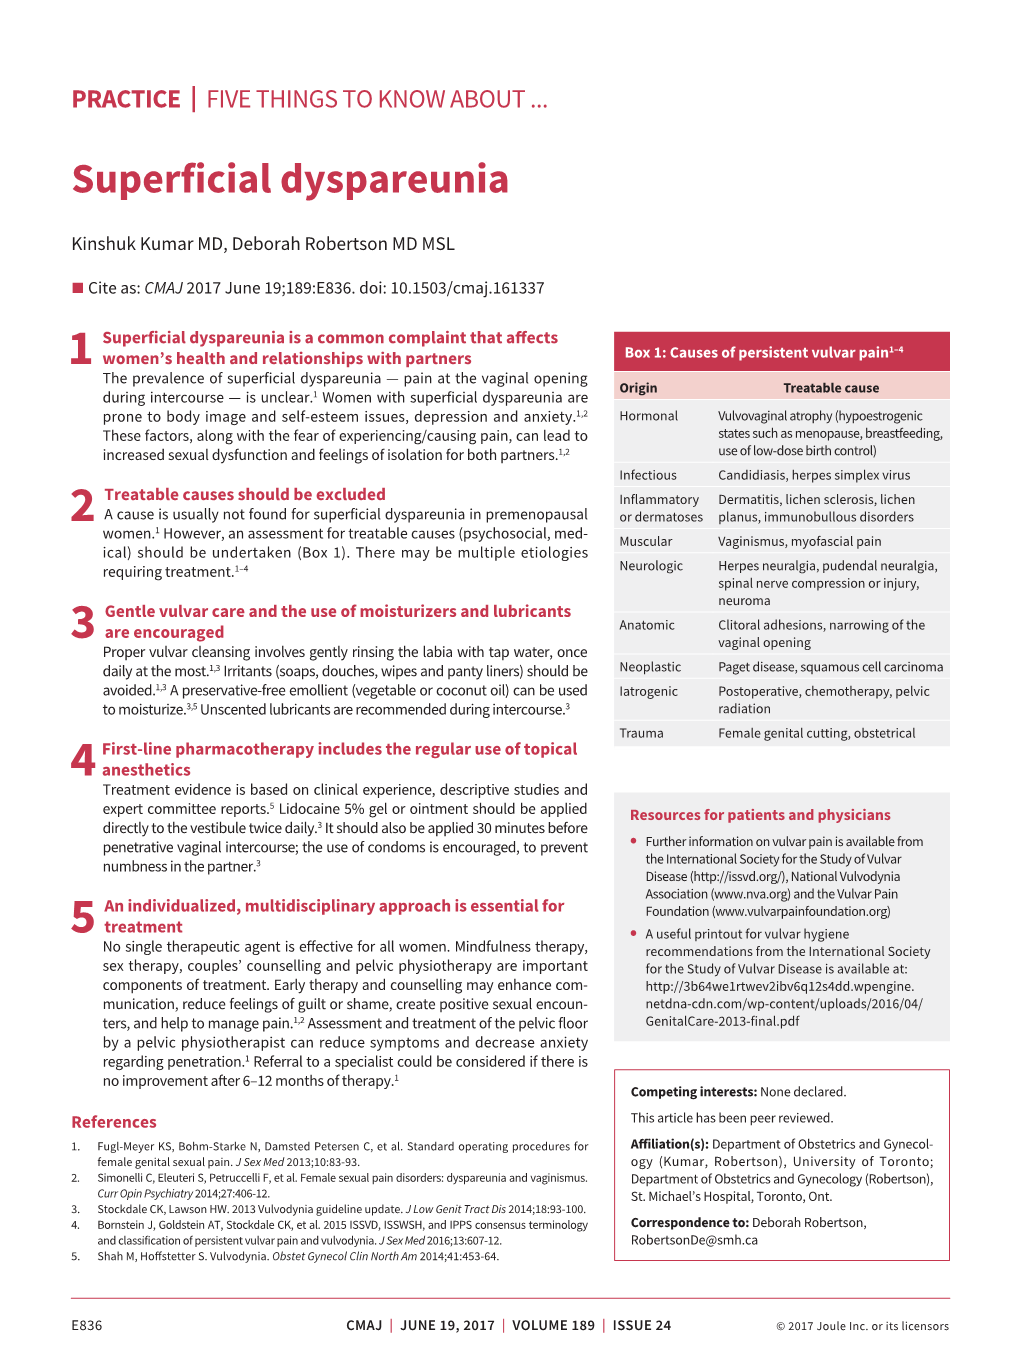 Superficial Dyspareunia